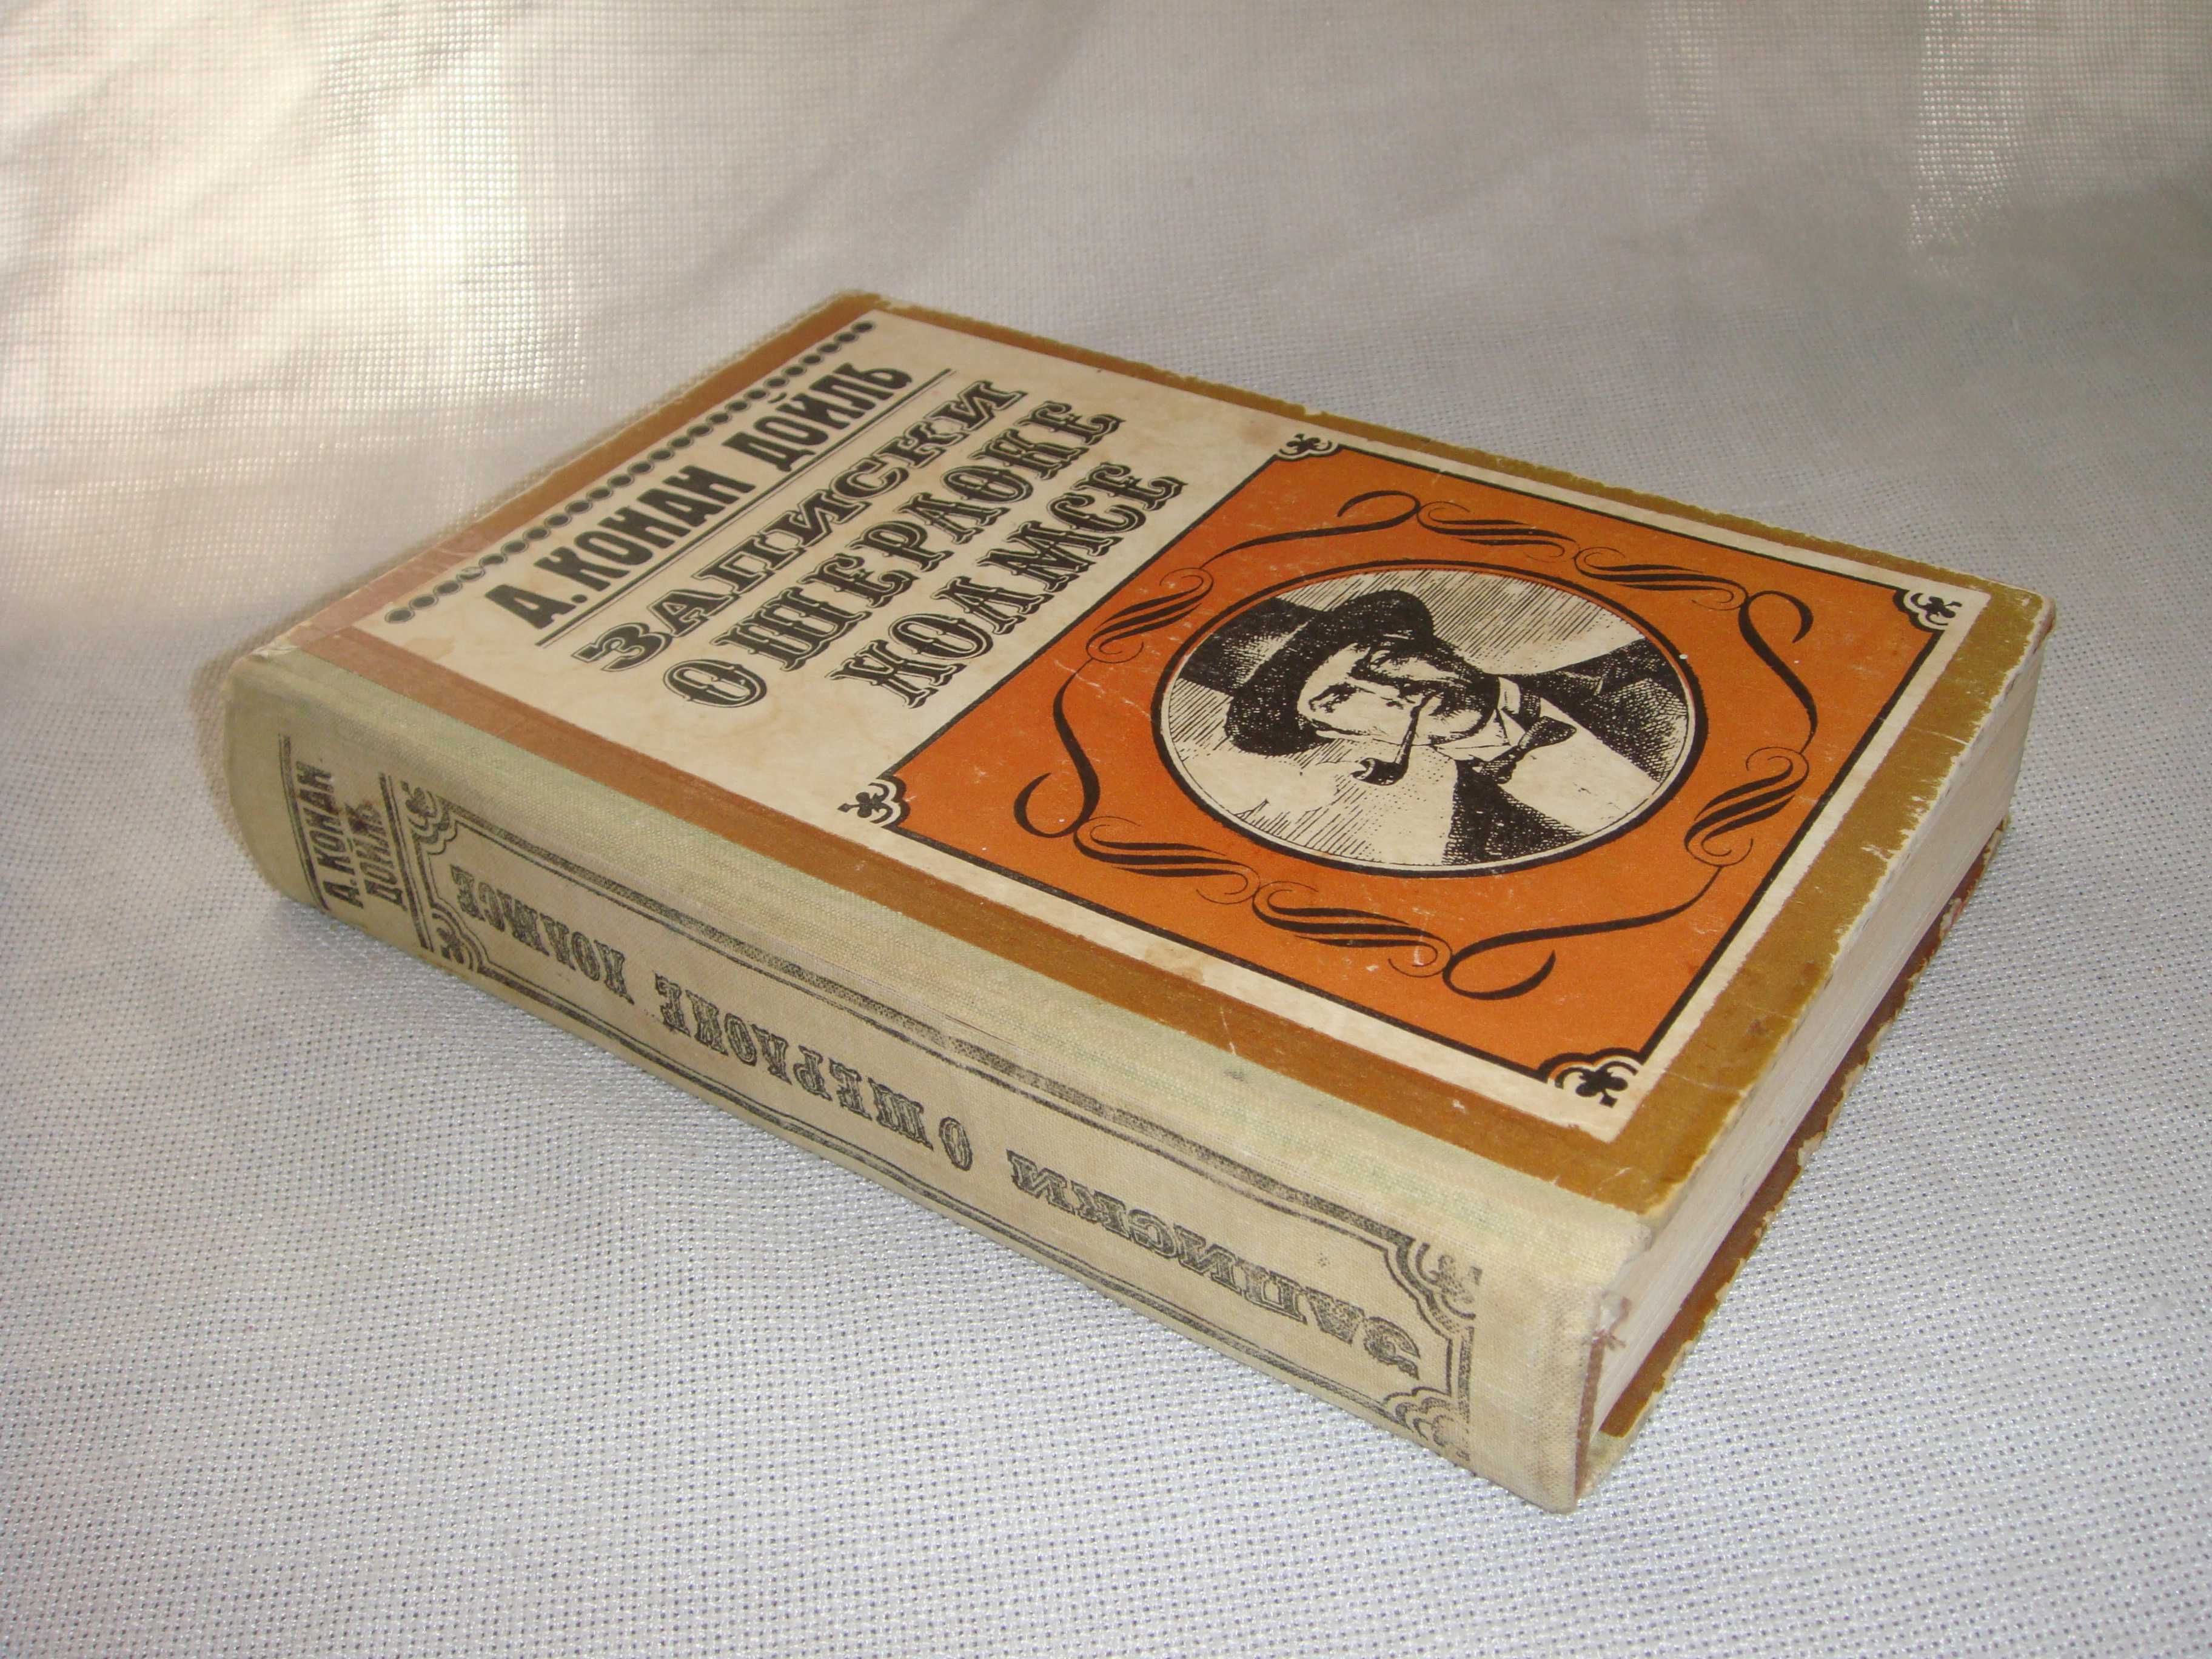 Старая раритетная книга Шерлок Холмс Конан Дойль 1977